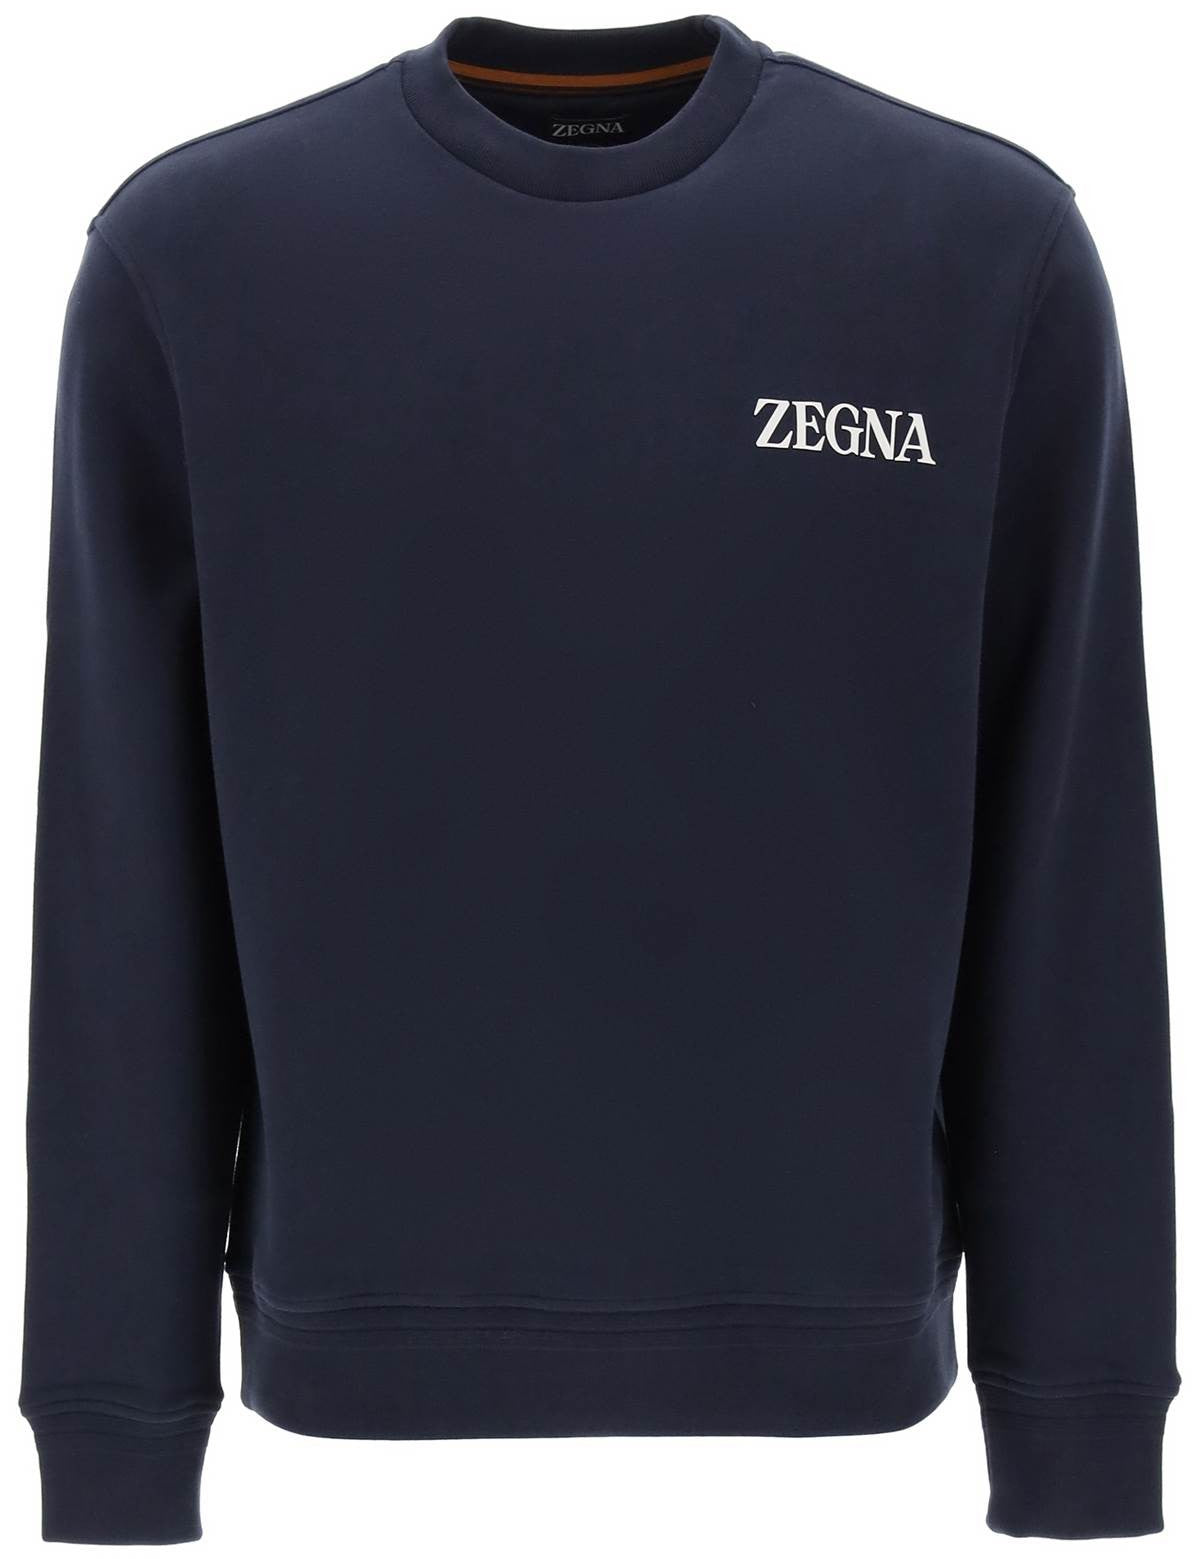 zegna-crew-neck-sweatshirt-with-flocked-logo_eb16114e-539e-4249-bb9a-c6232b5e046a.jpg